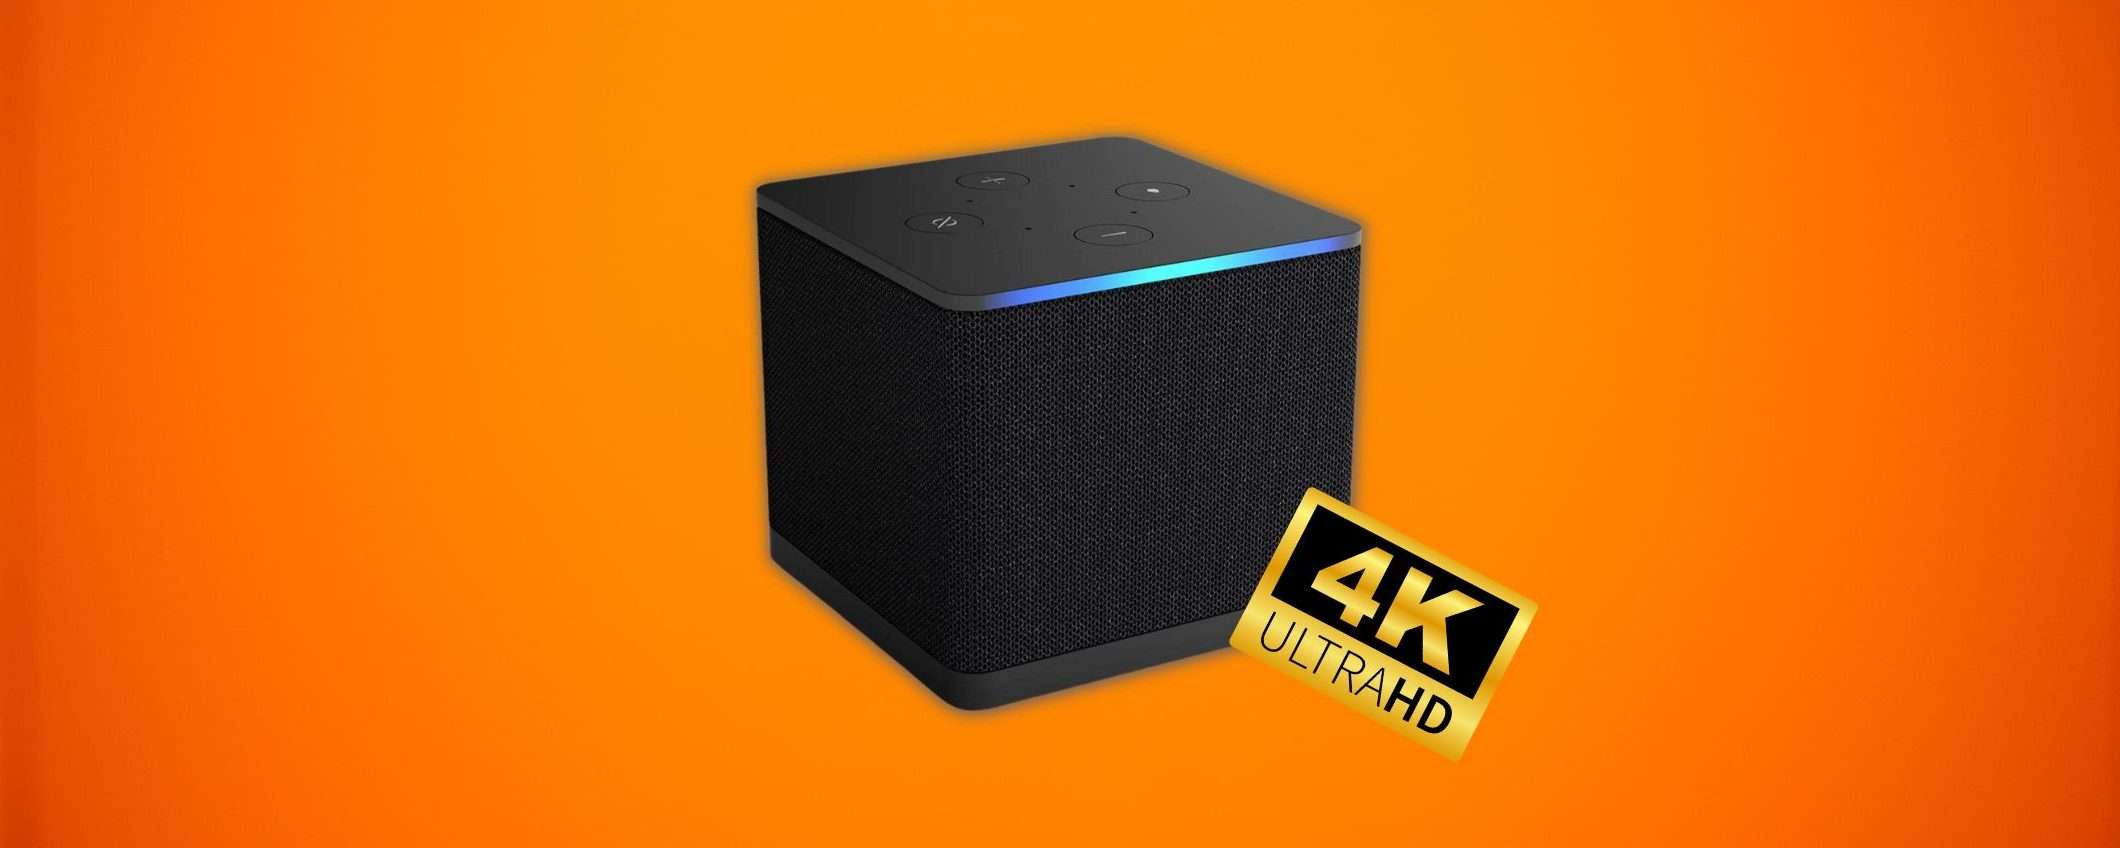 Nuovo Fire TV Cube: il prezzo CROLLA al minimo storico su Amazon